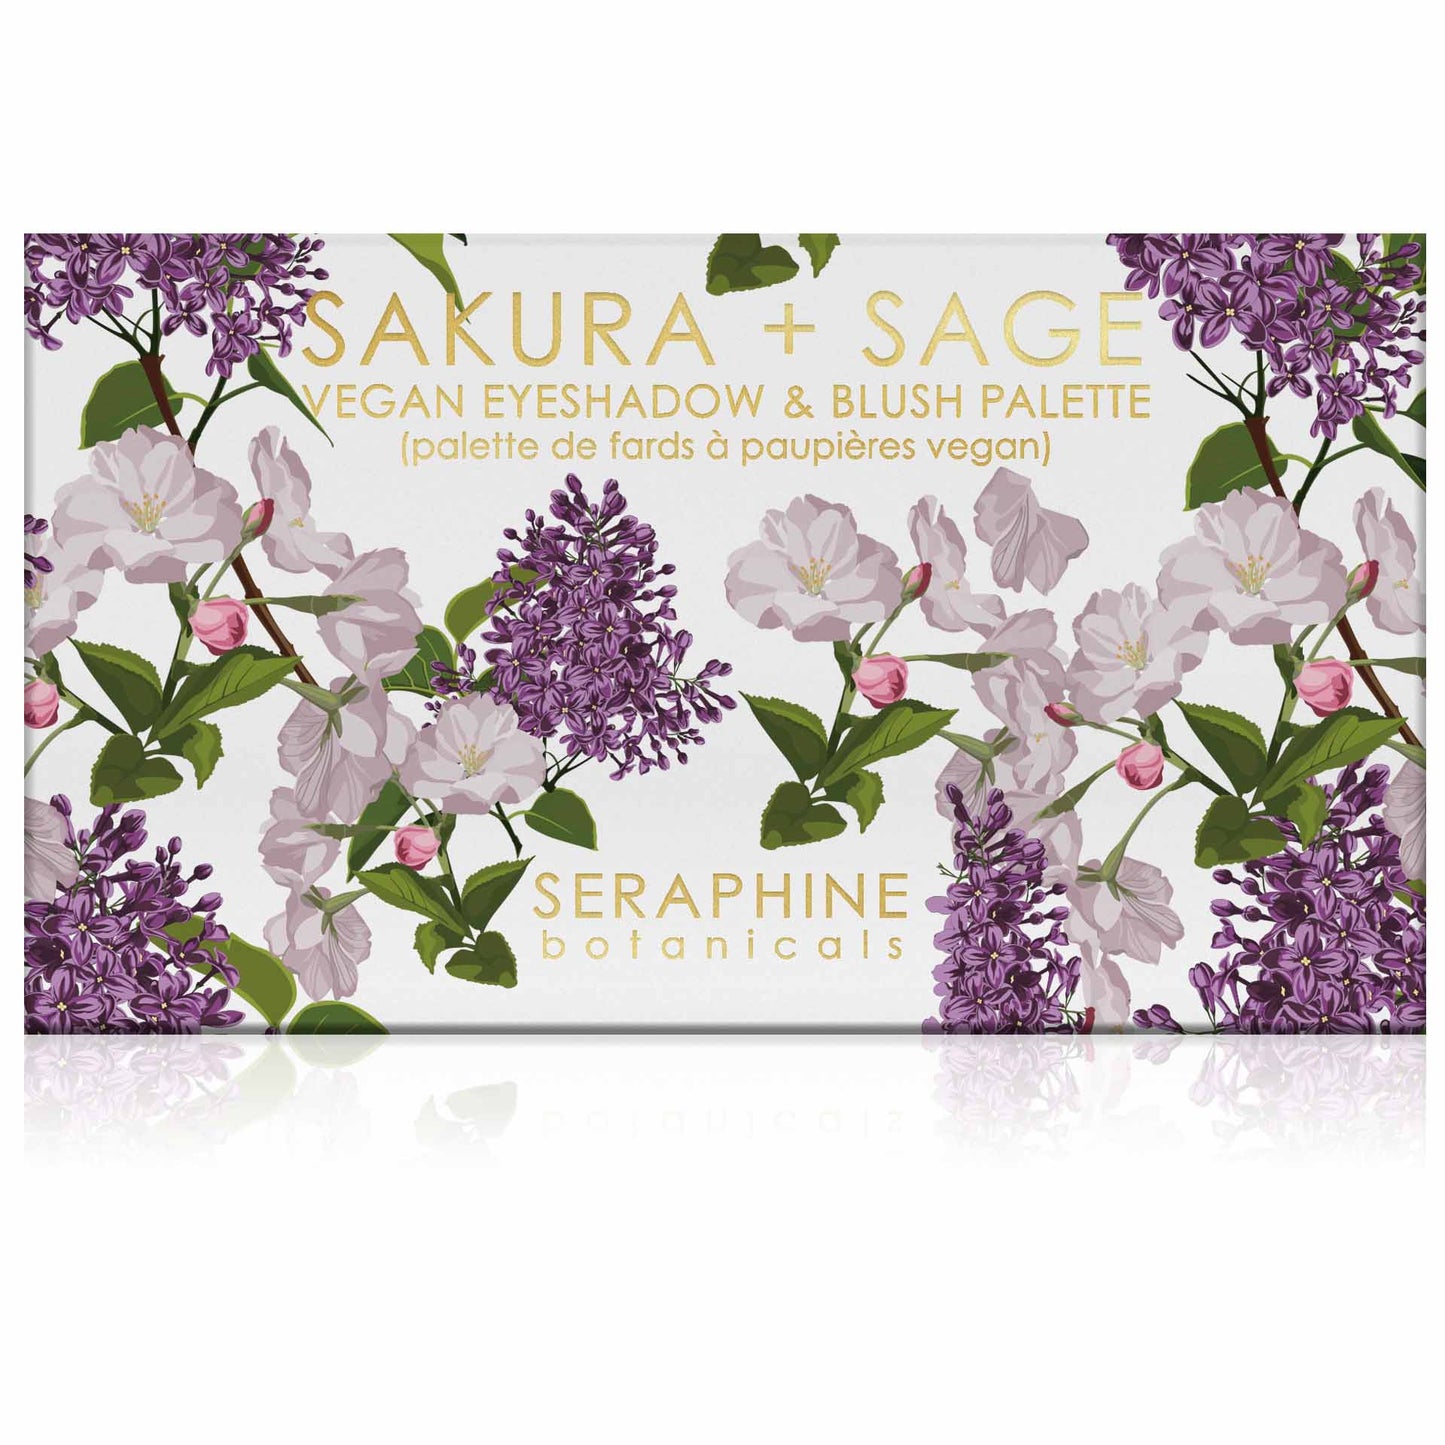 Sakura + Sage - Vegan Eyeshadow & Blush Palette